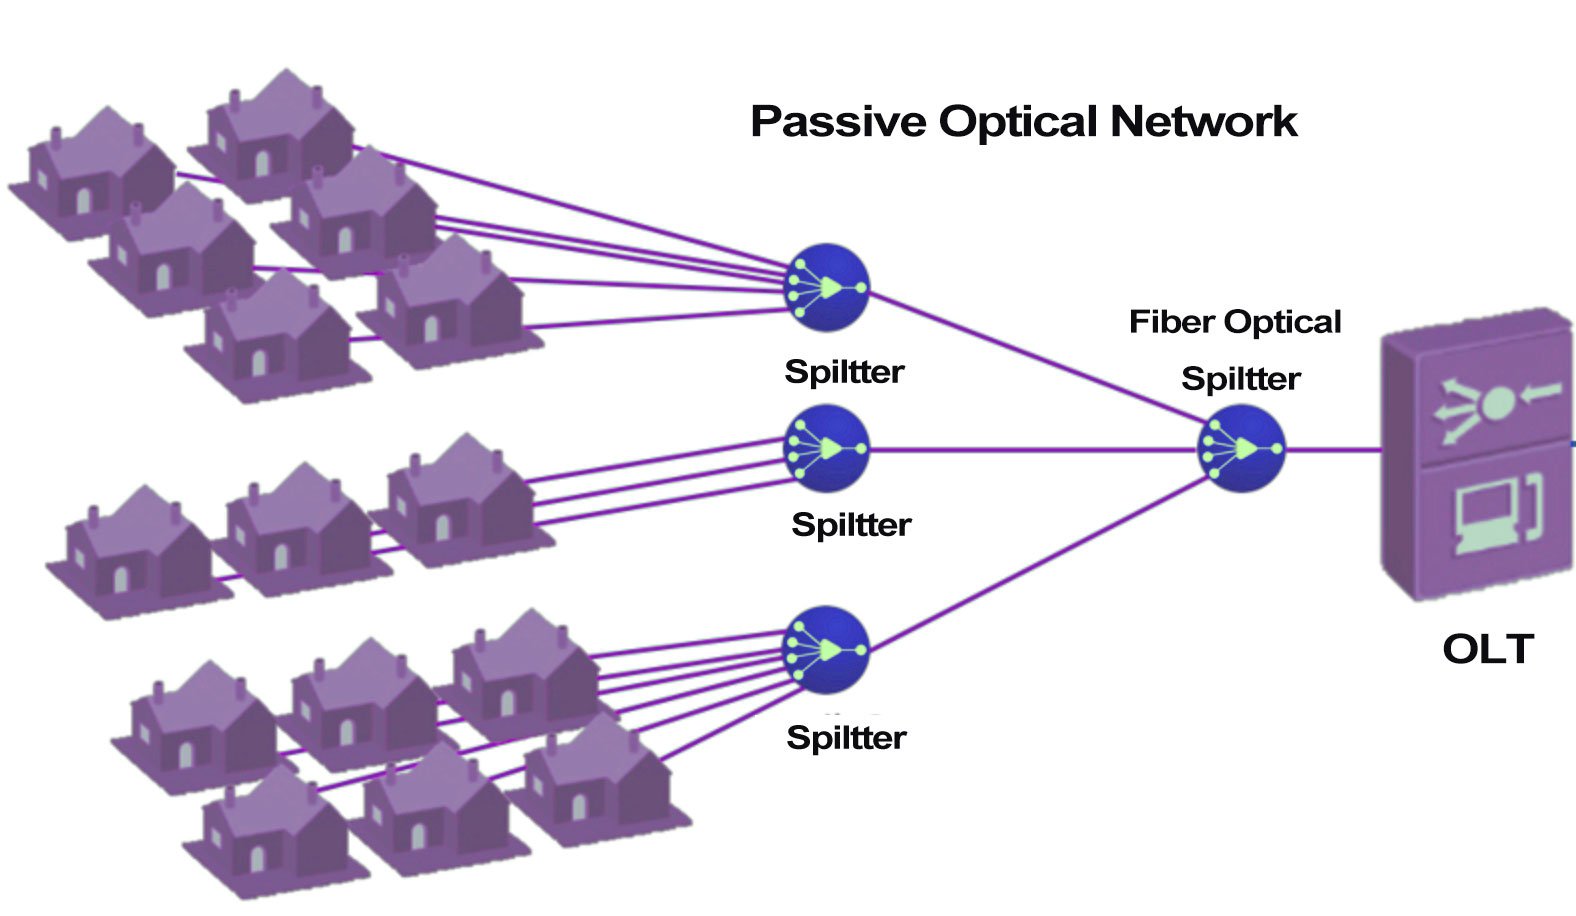 ホームブロードバンド向けに設計されたパッシブ光ネットワークの図